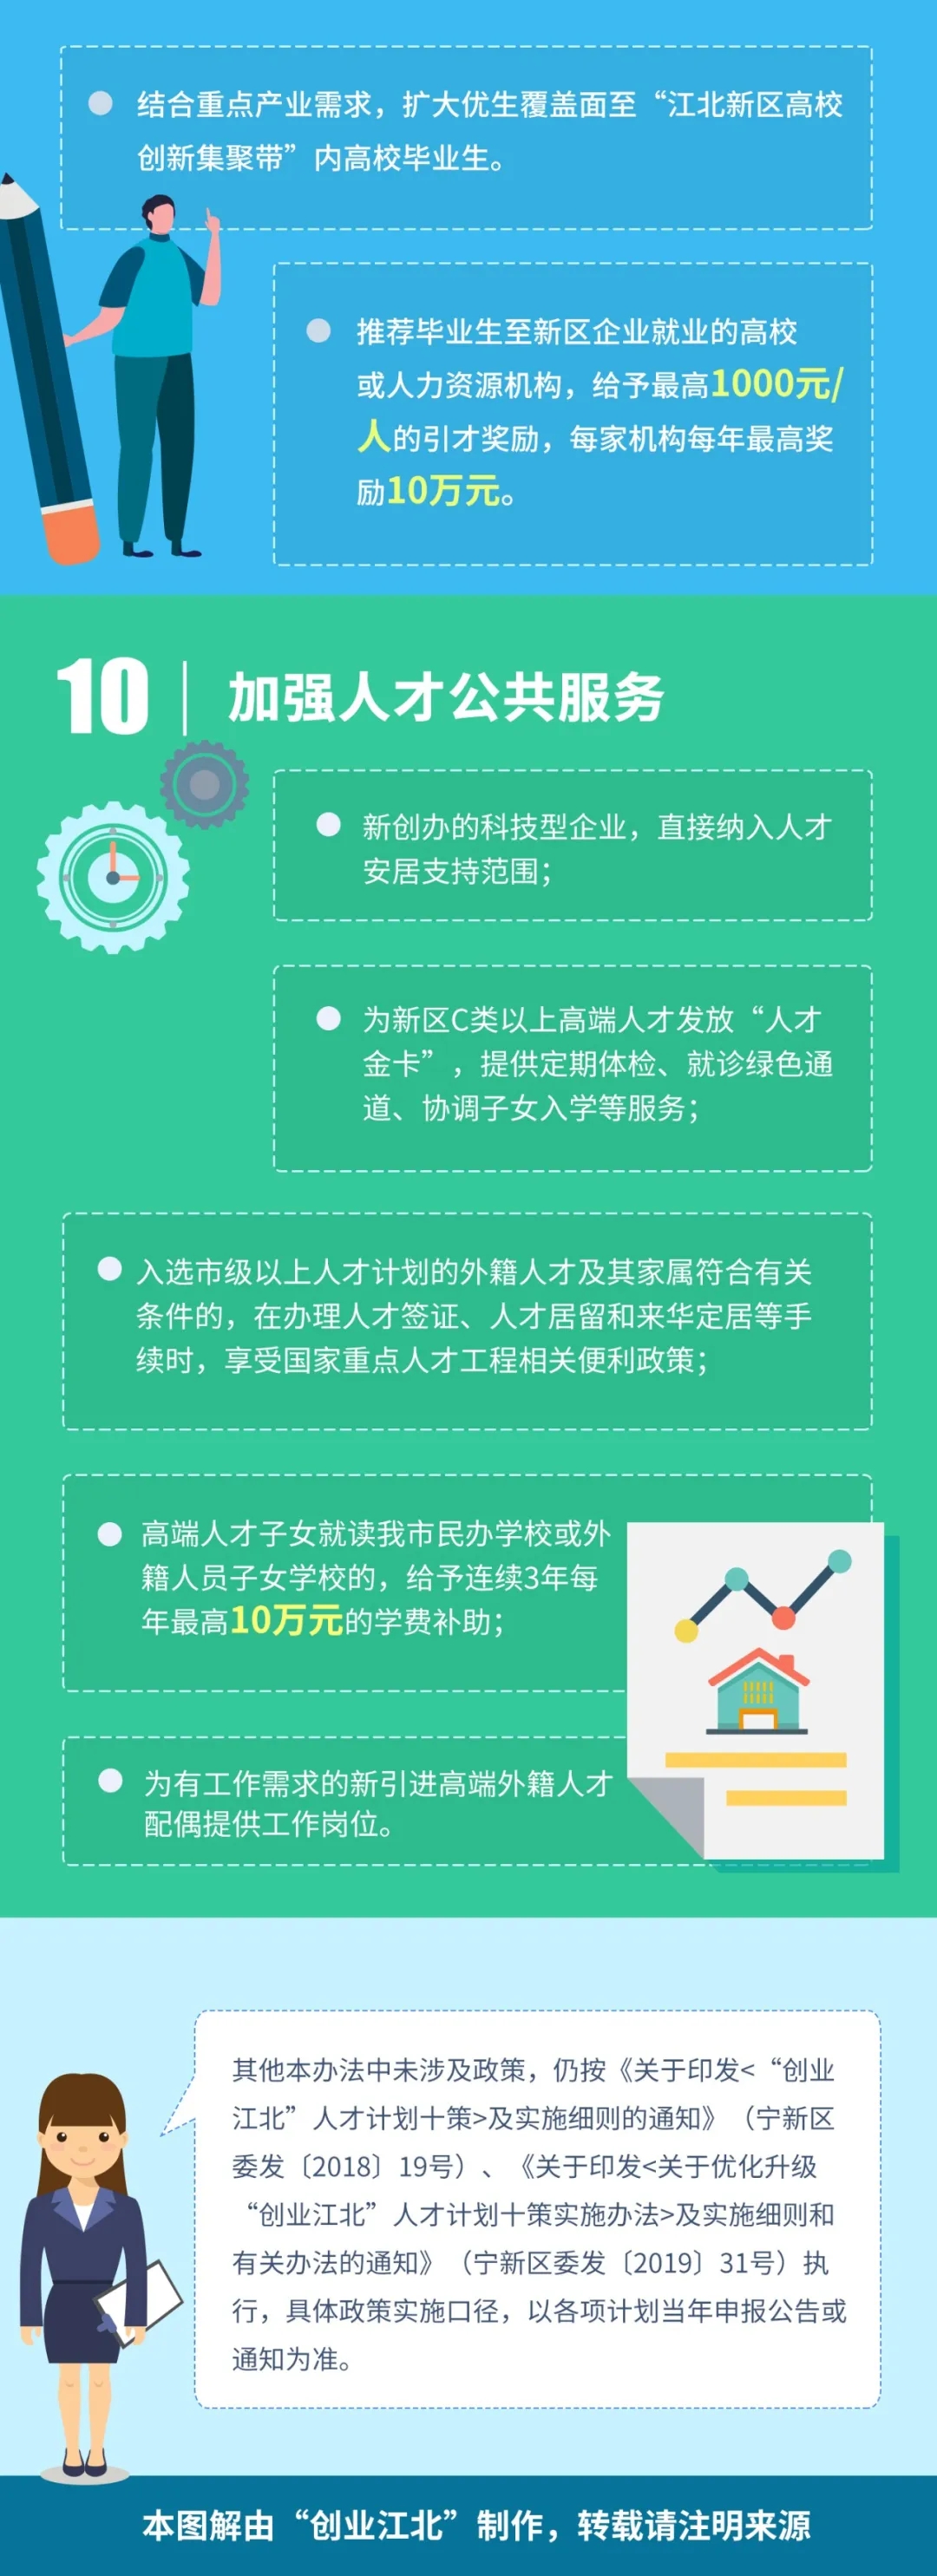 南京江北新区：博士后人才年龄放宽至40岁，支付住房补贴